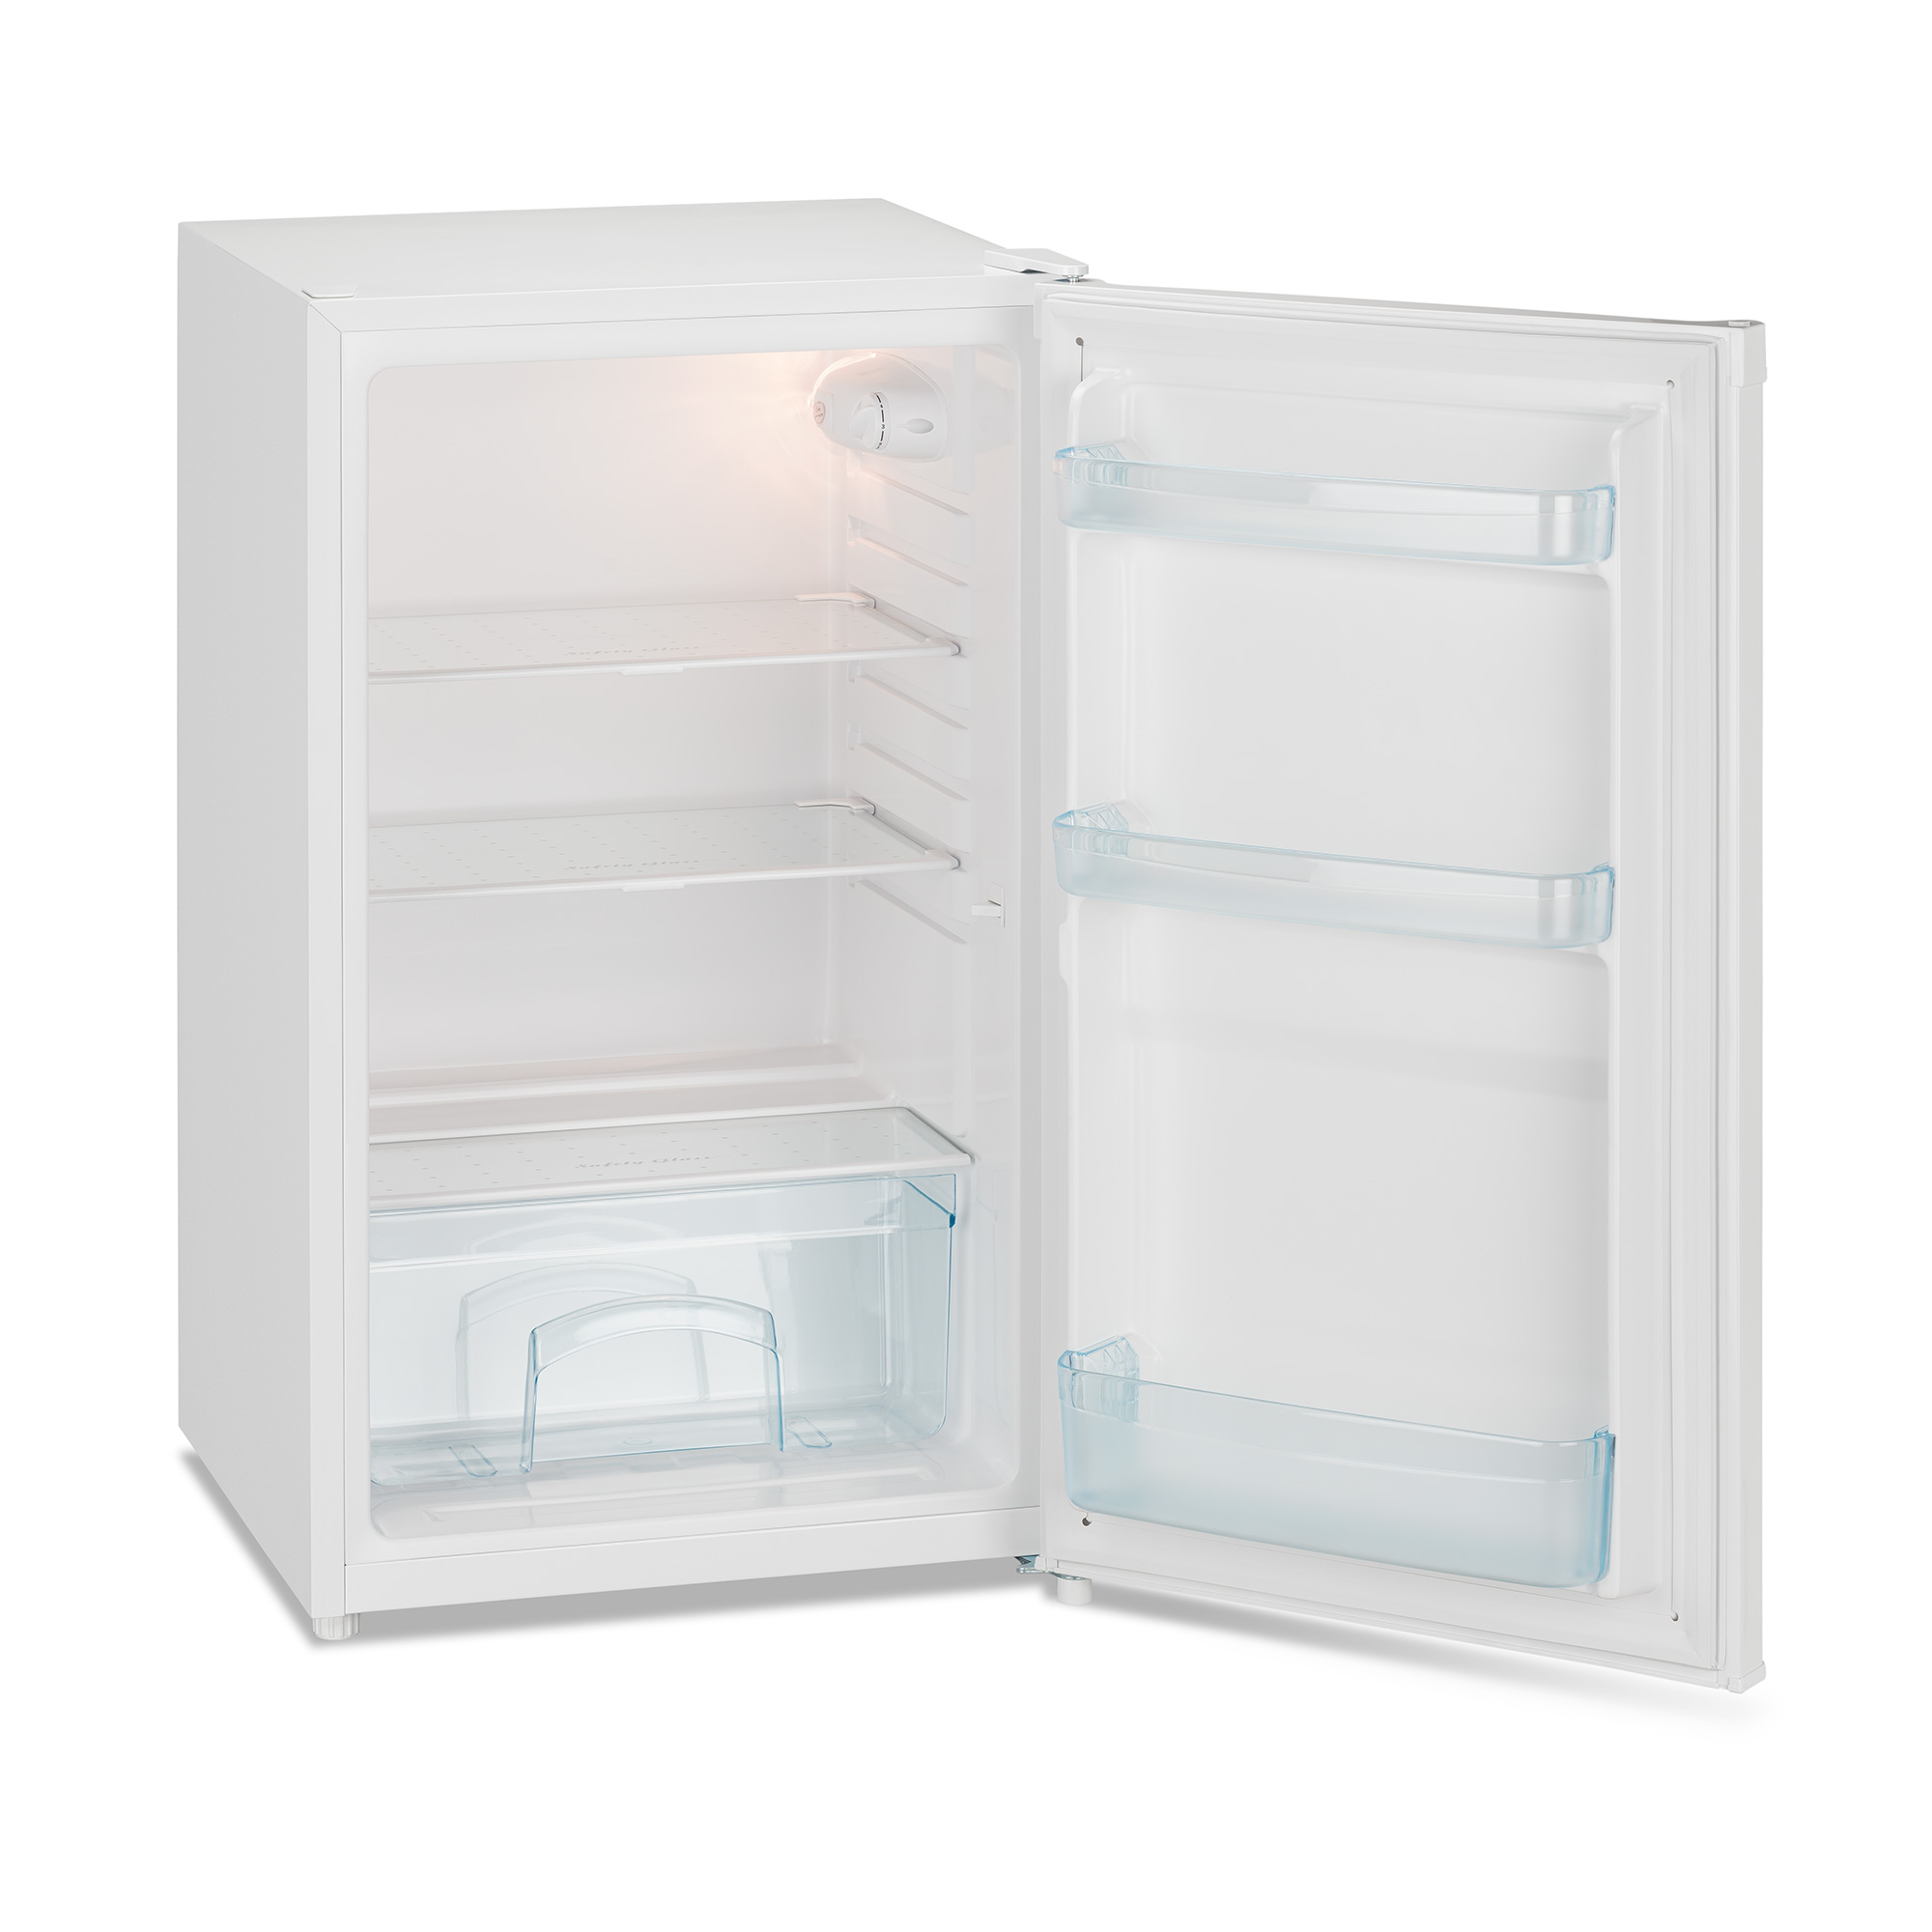 Iceking 91 litre under counter larder fridge RL111WE